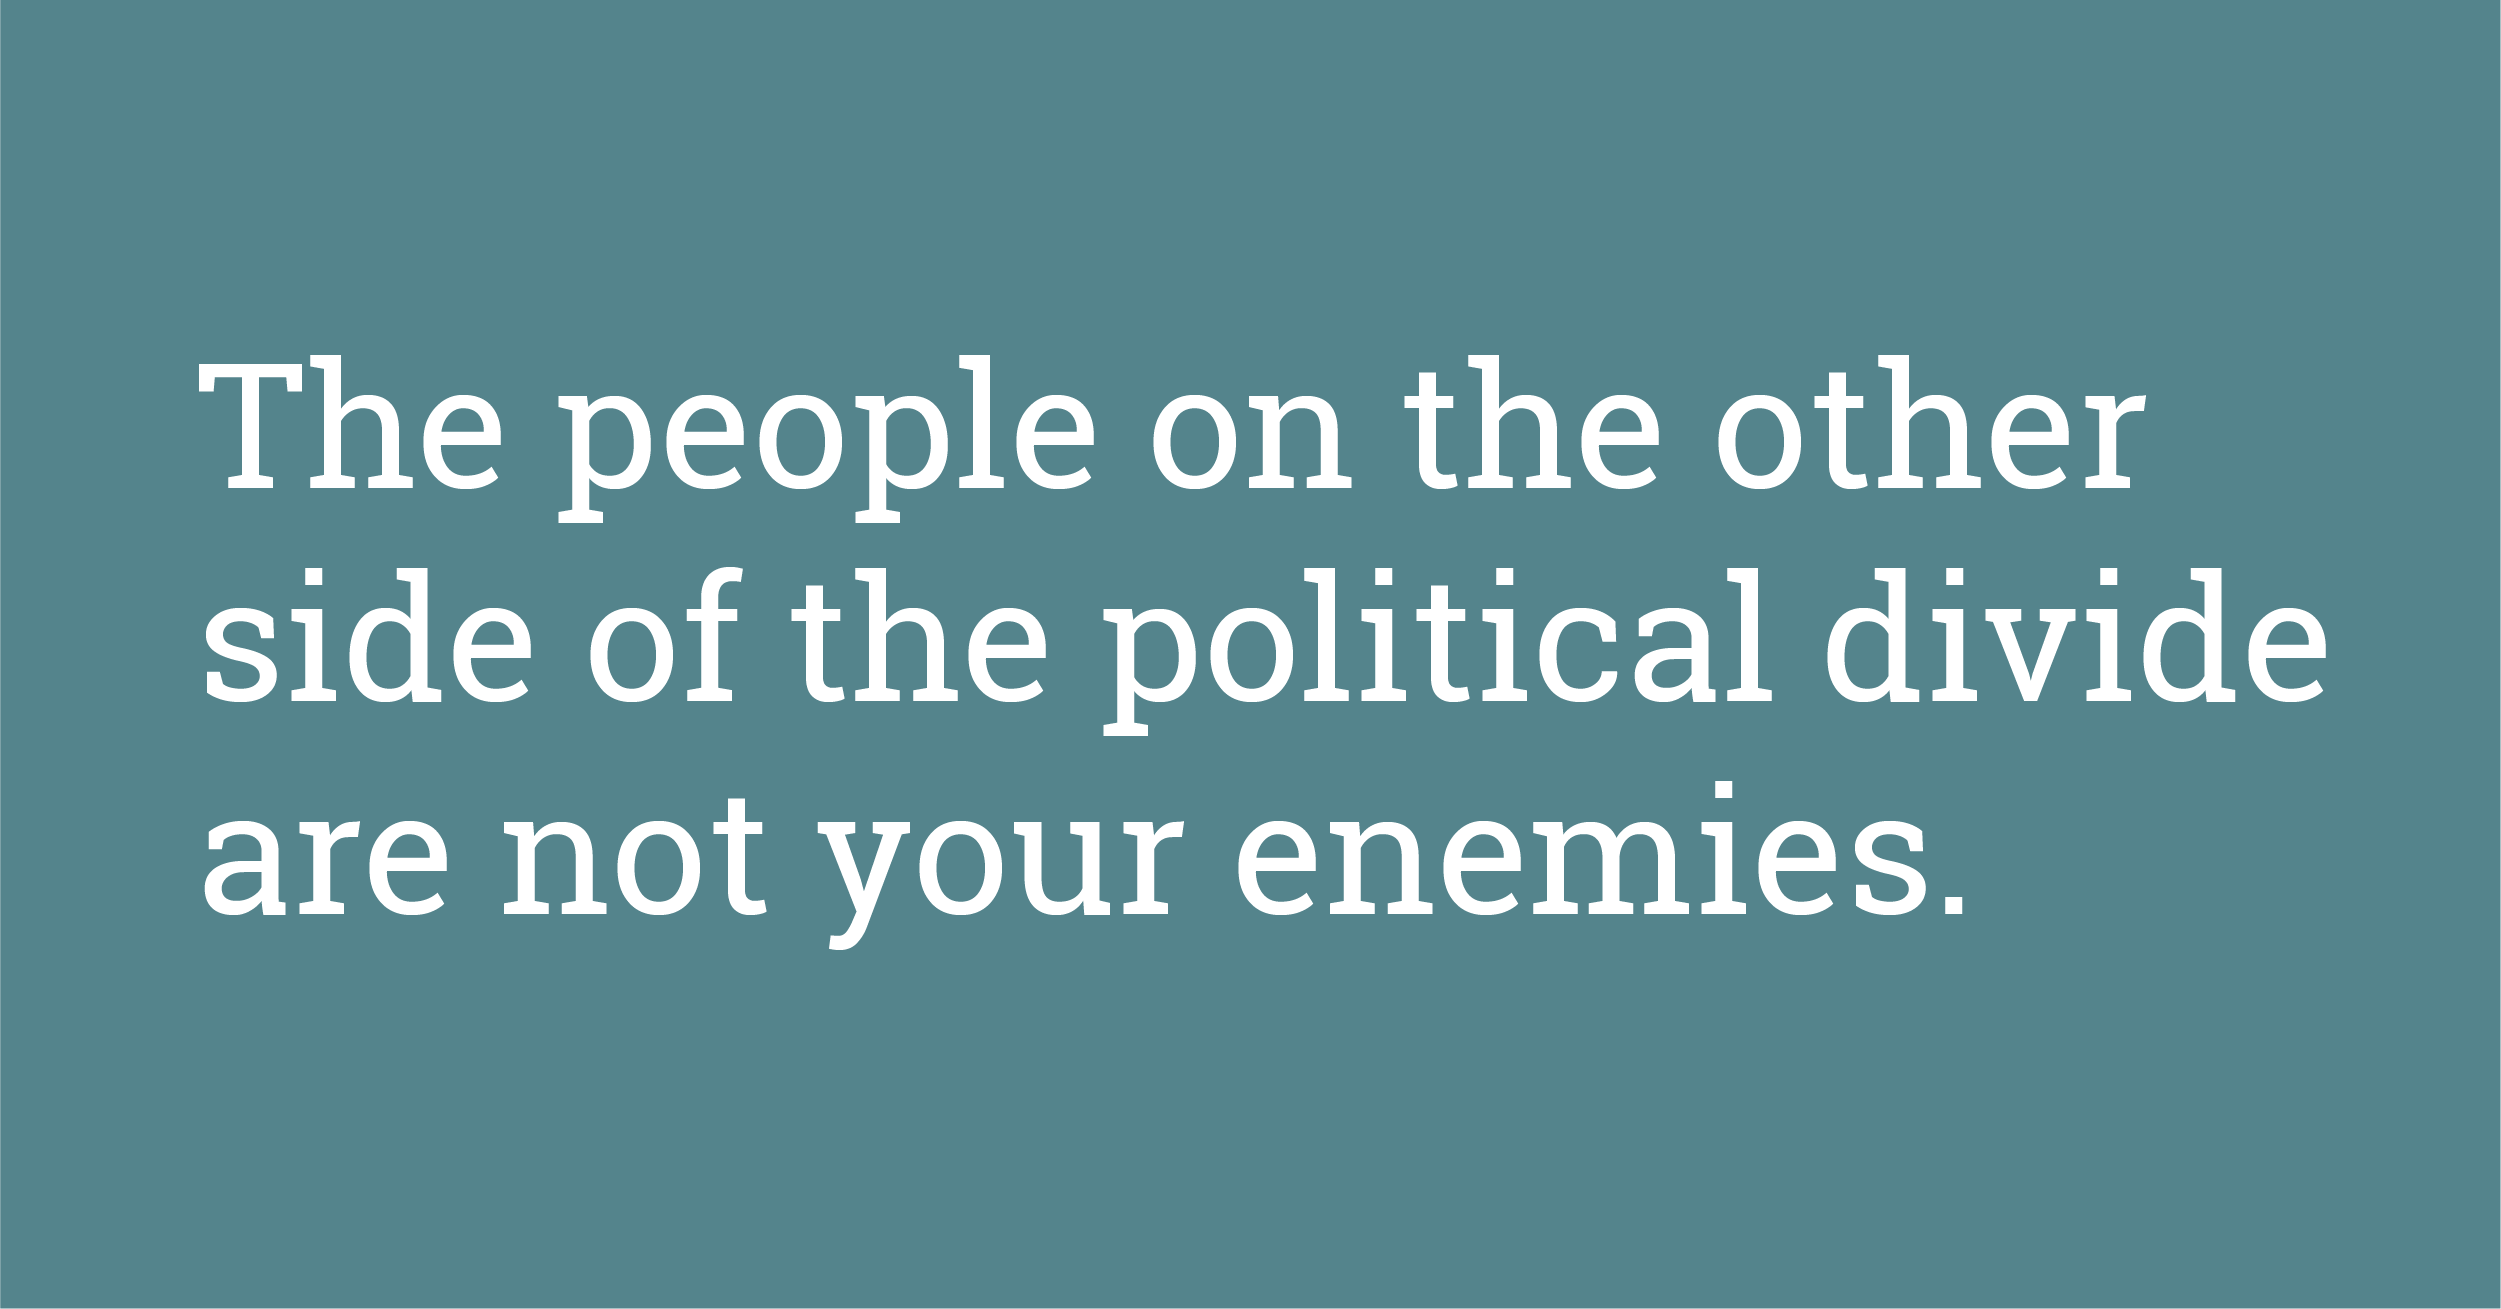 not your enemies